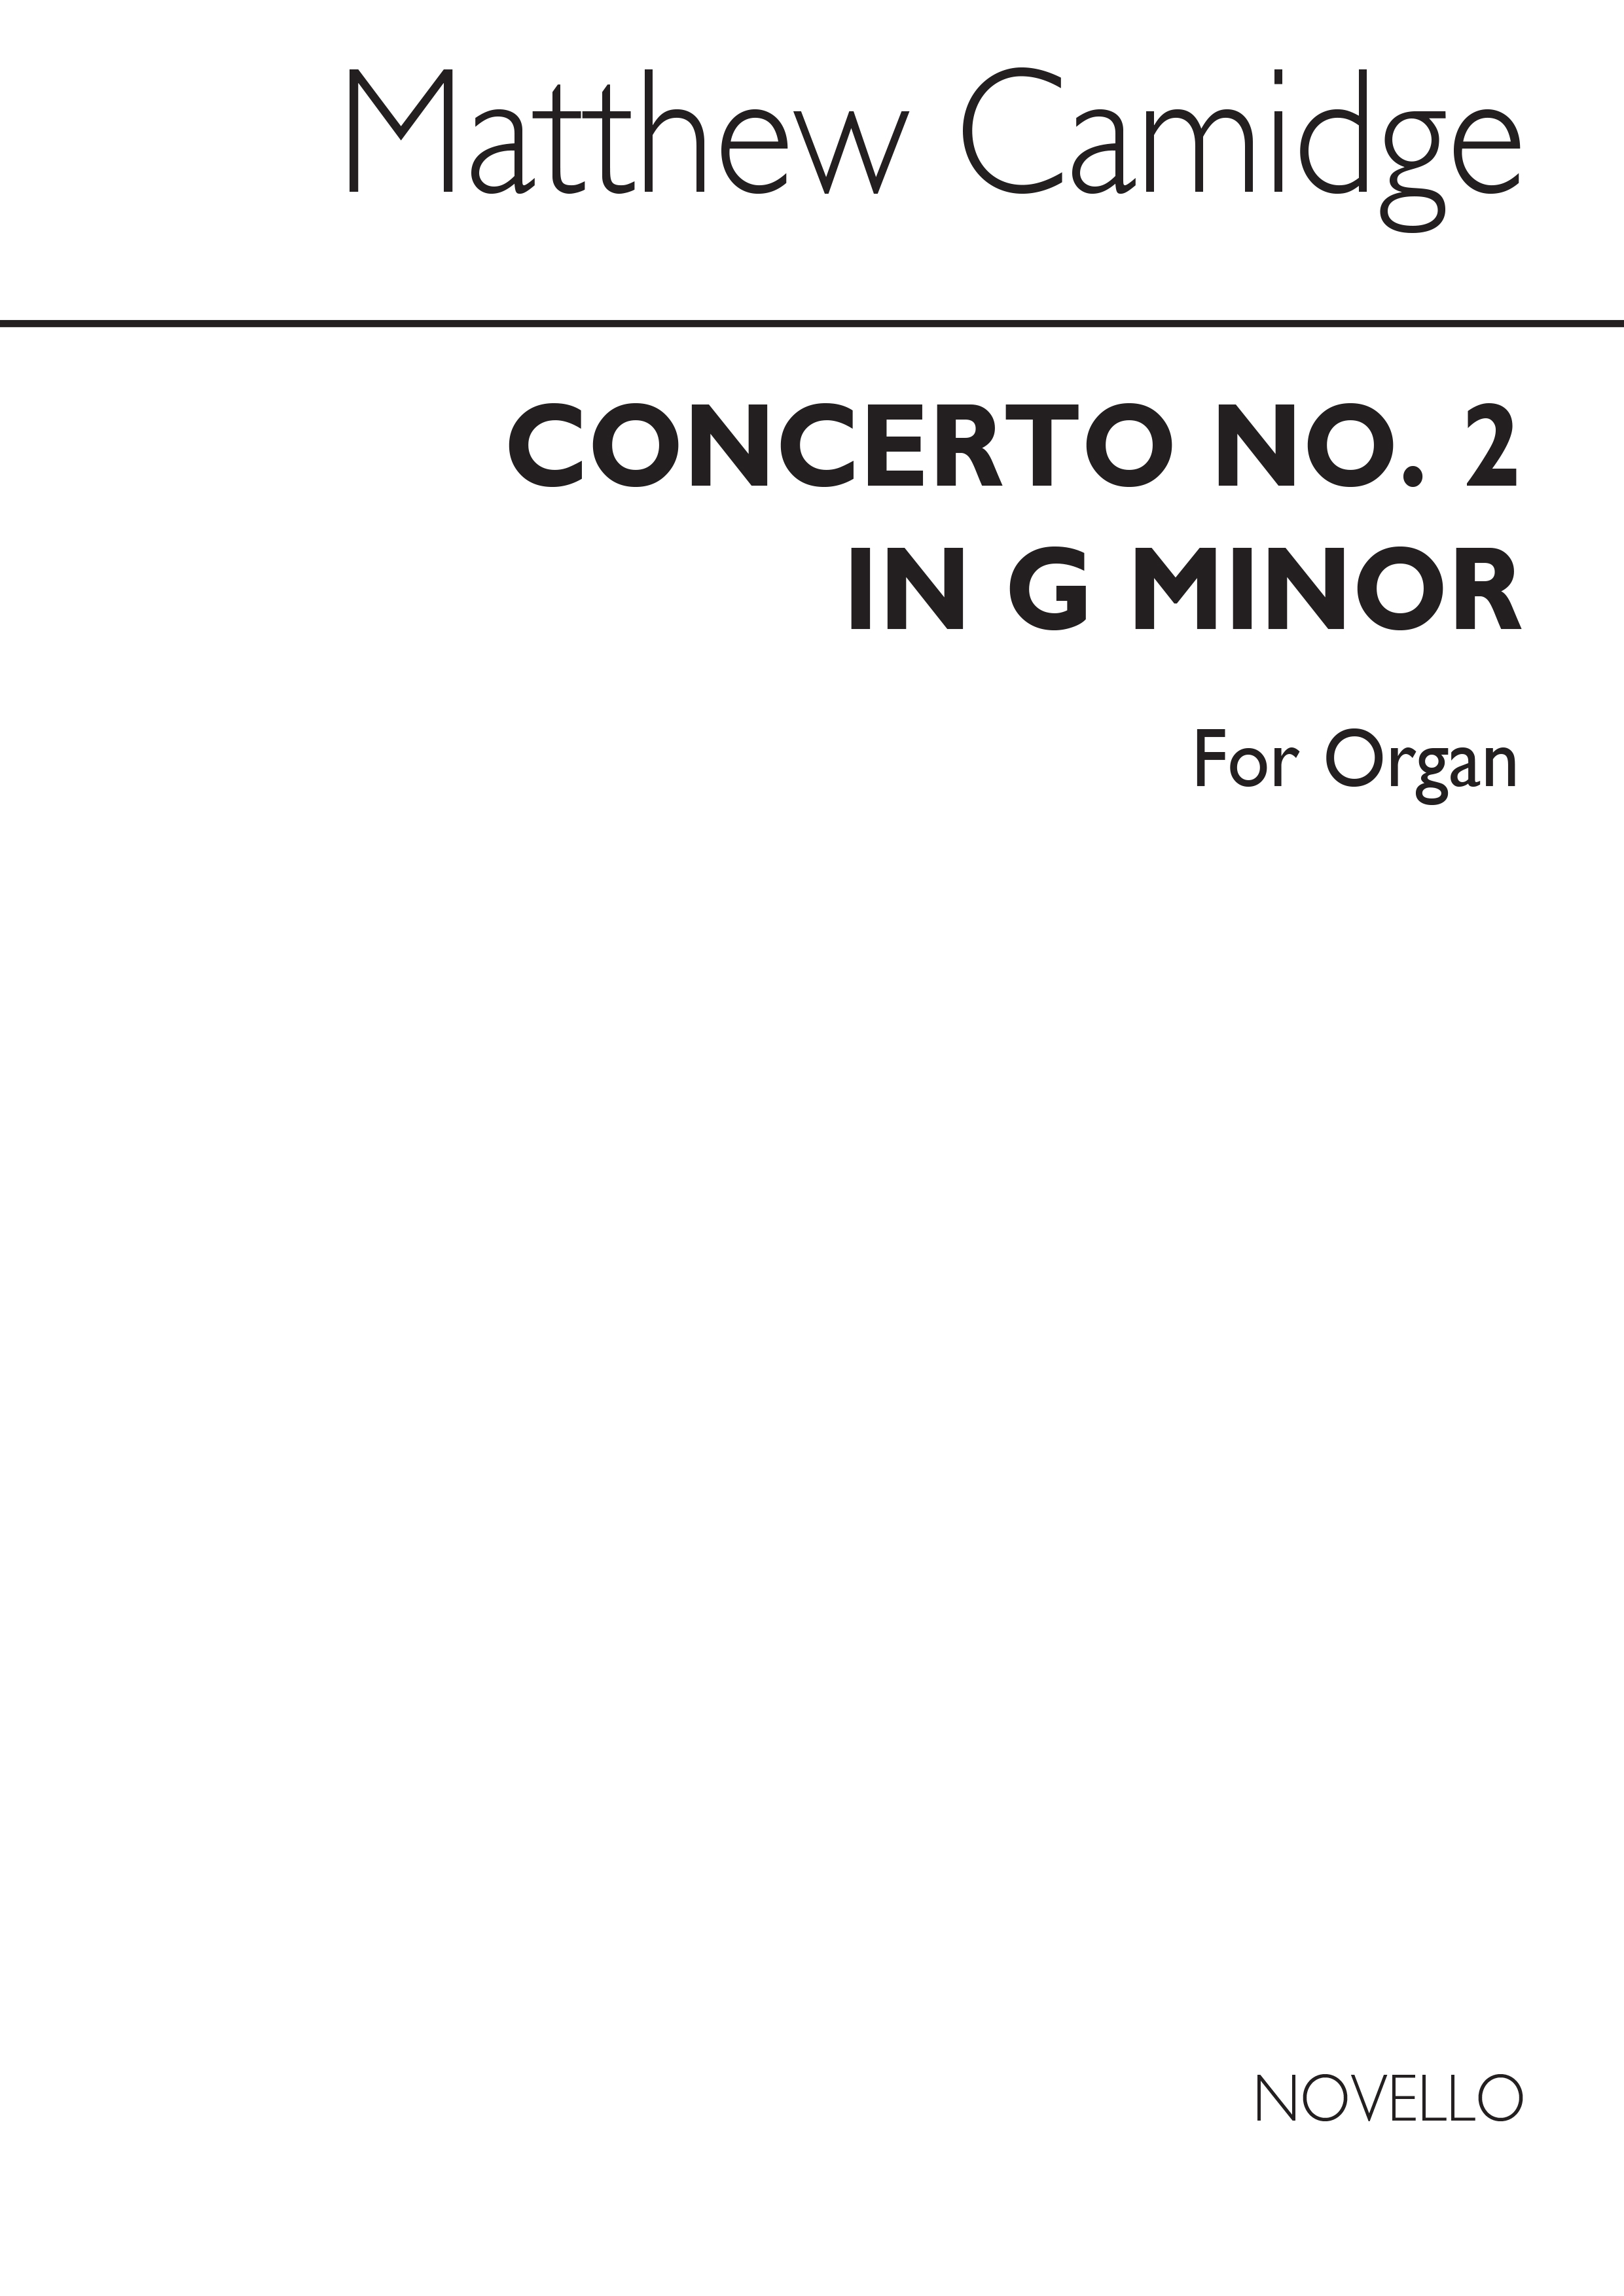 Matthew Camidge: Concerto No 2 In G Minor For Organ